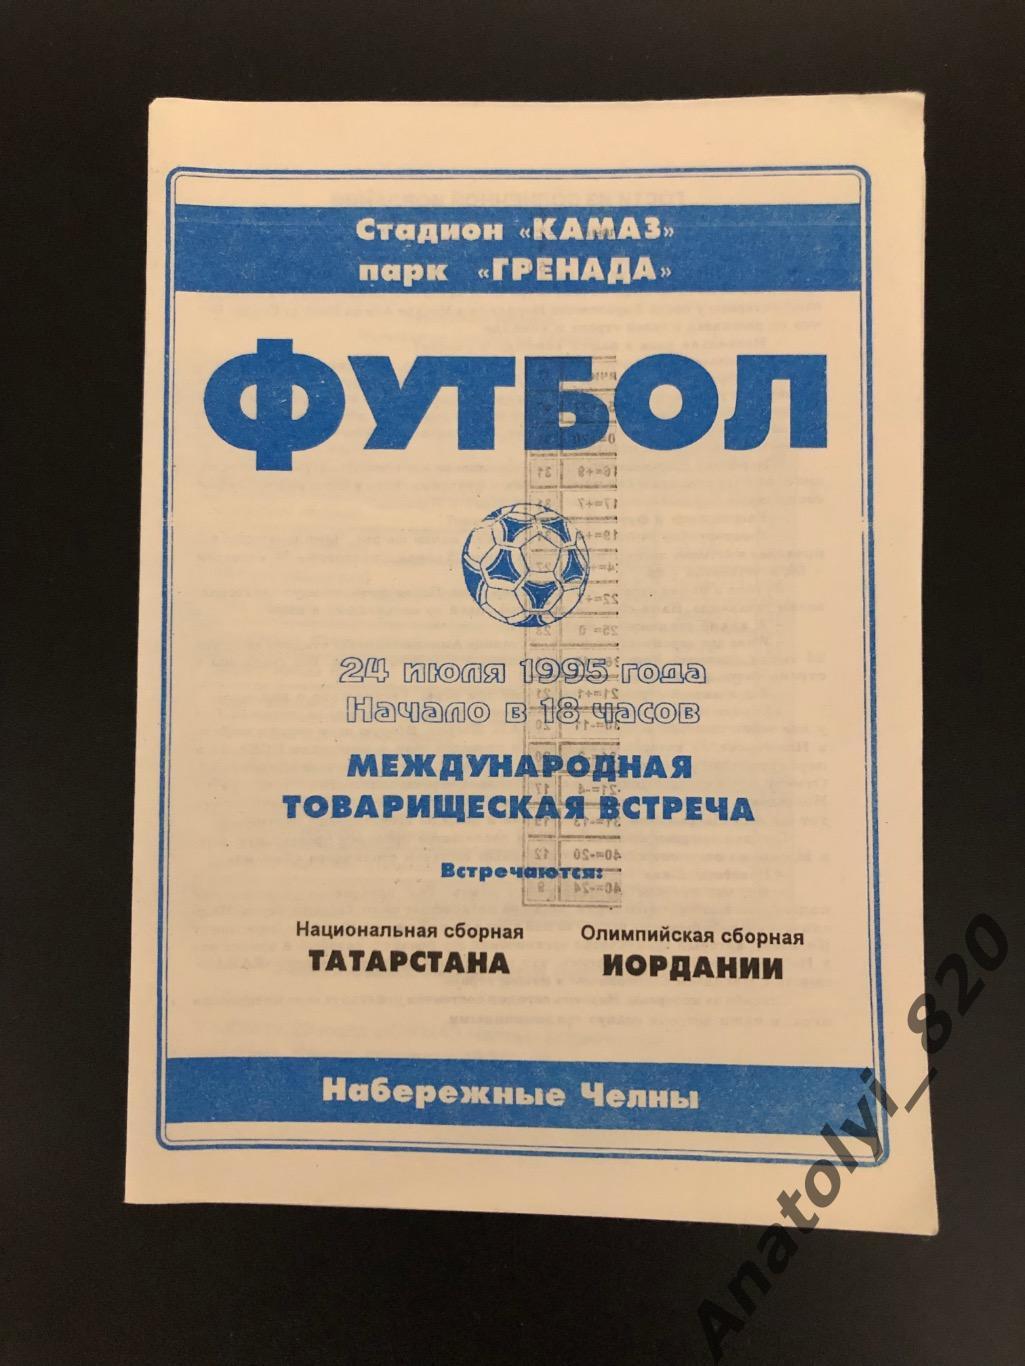 Сборная Татарстана - сборная Иордании, 24.07.1995